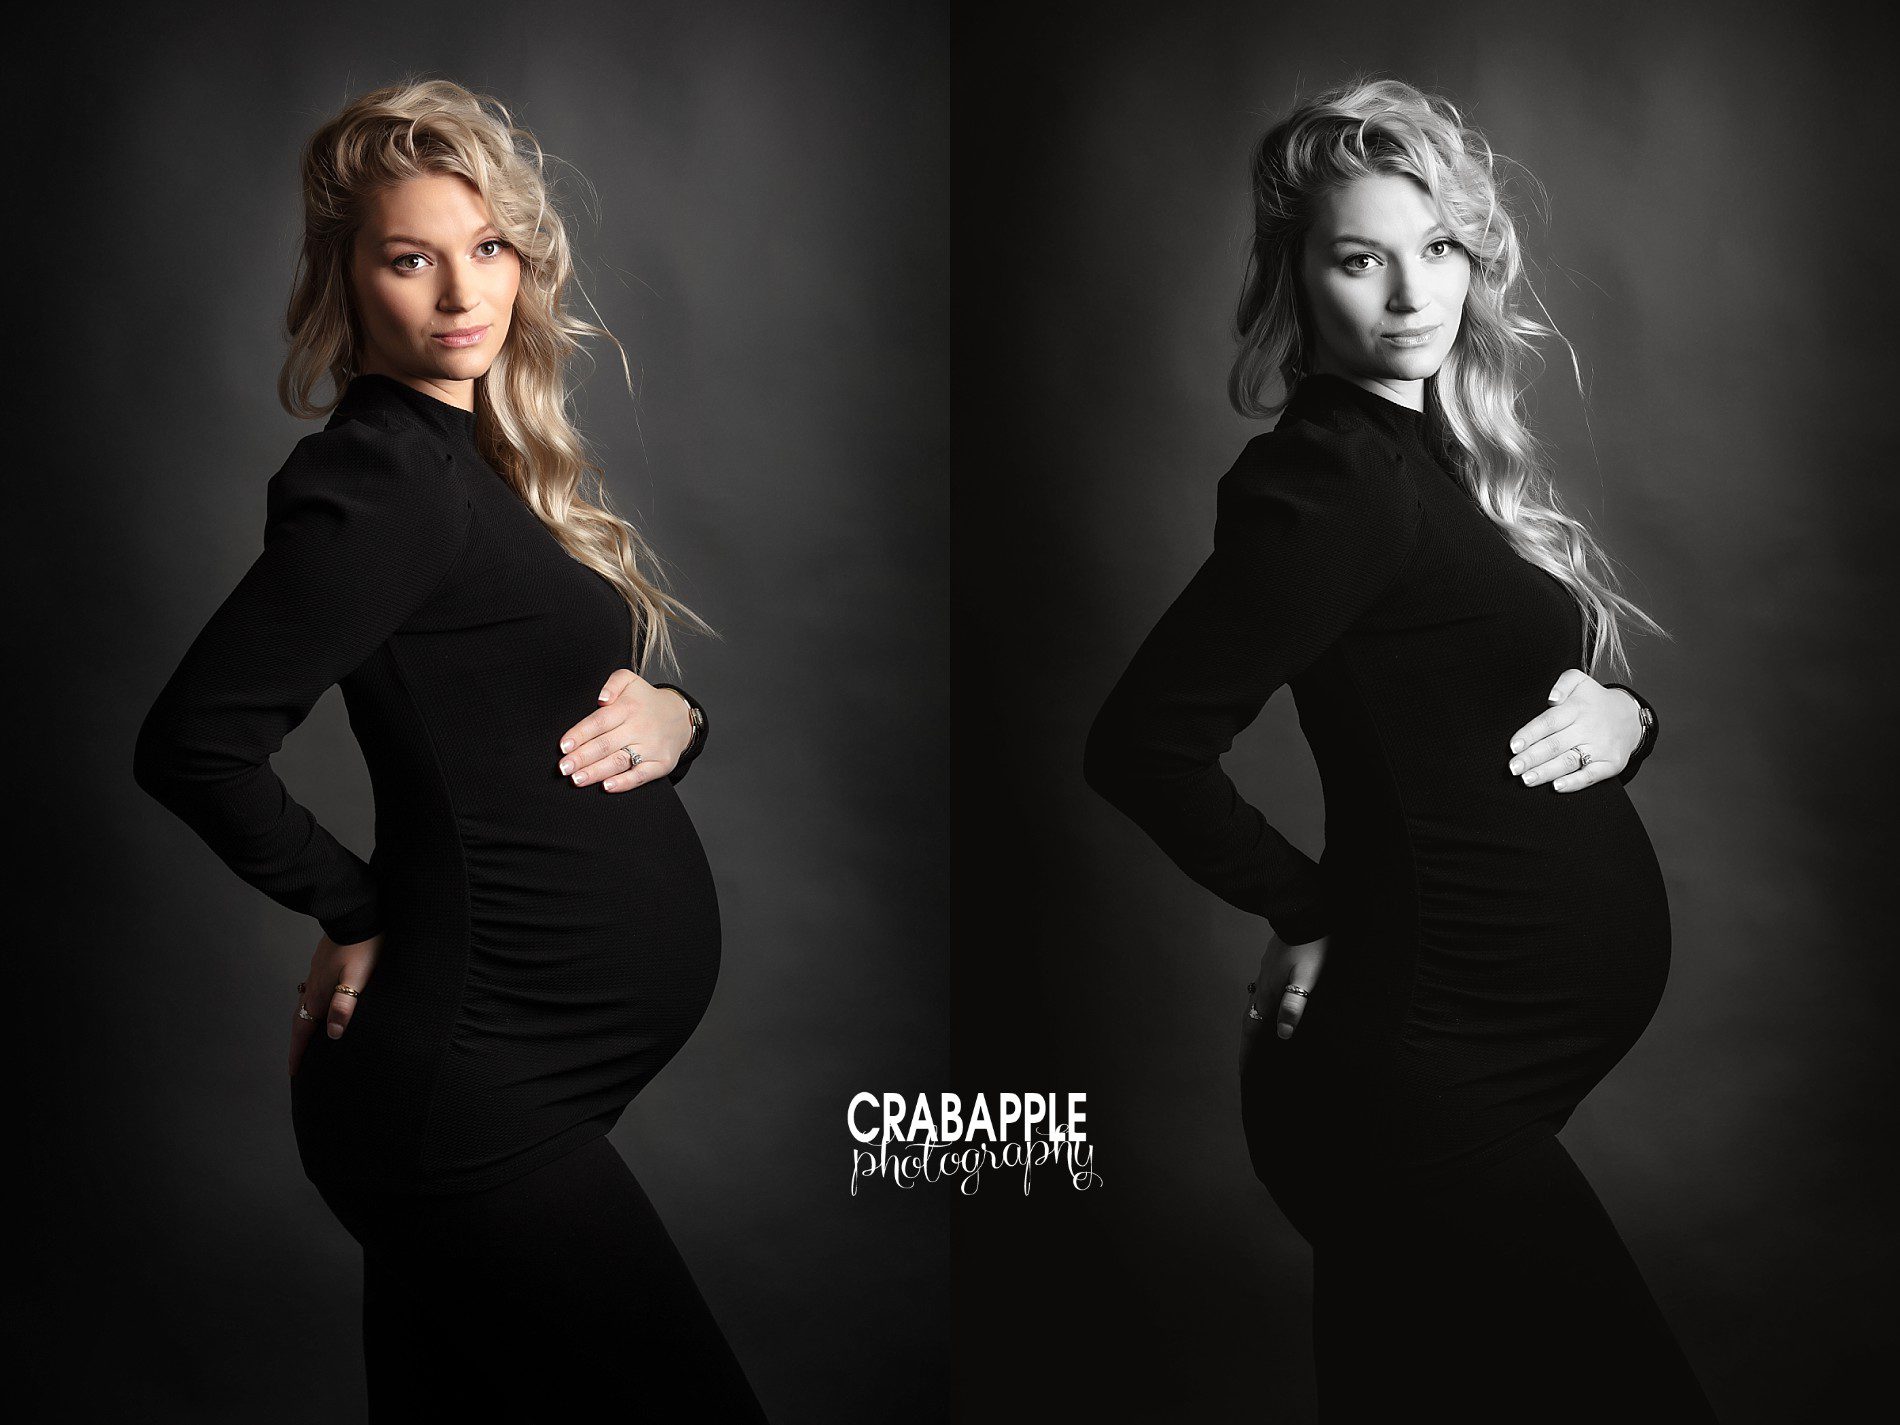 glamorous maternity photo ideas